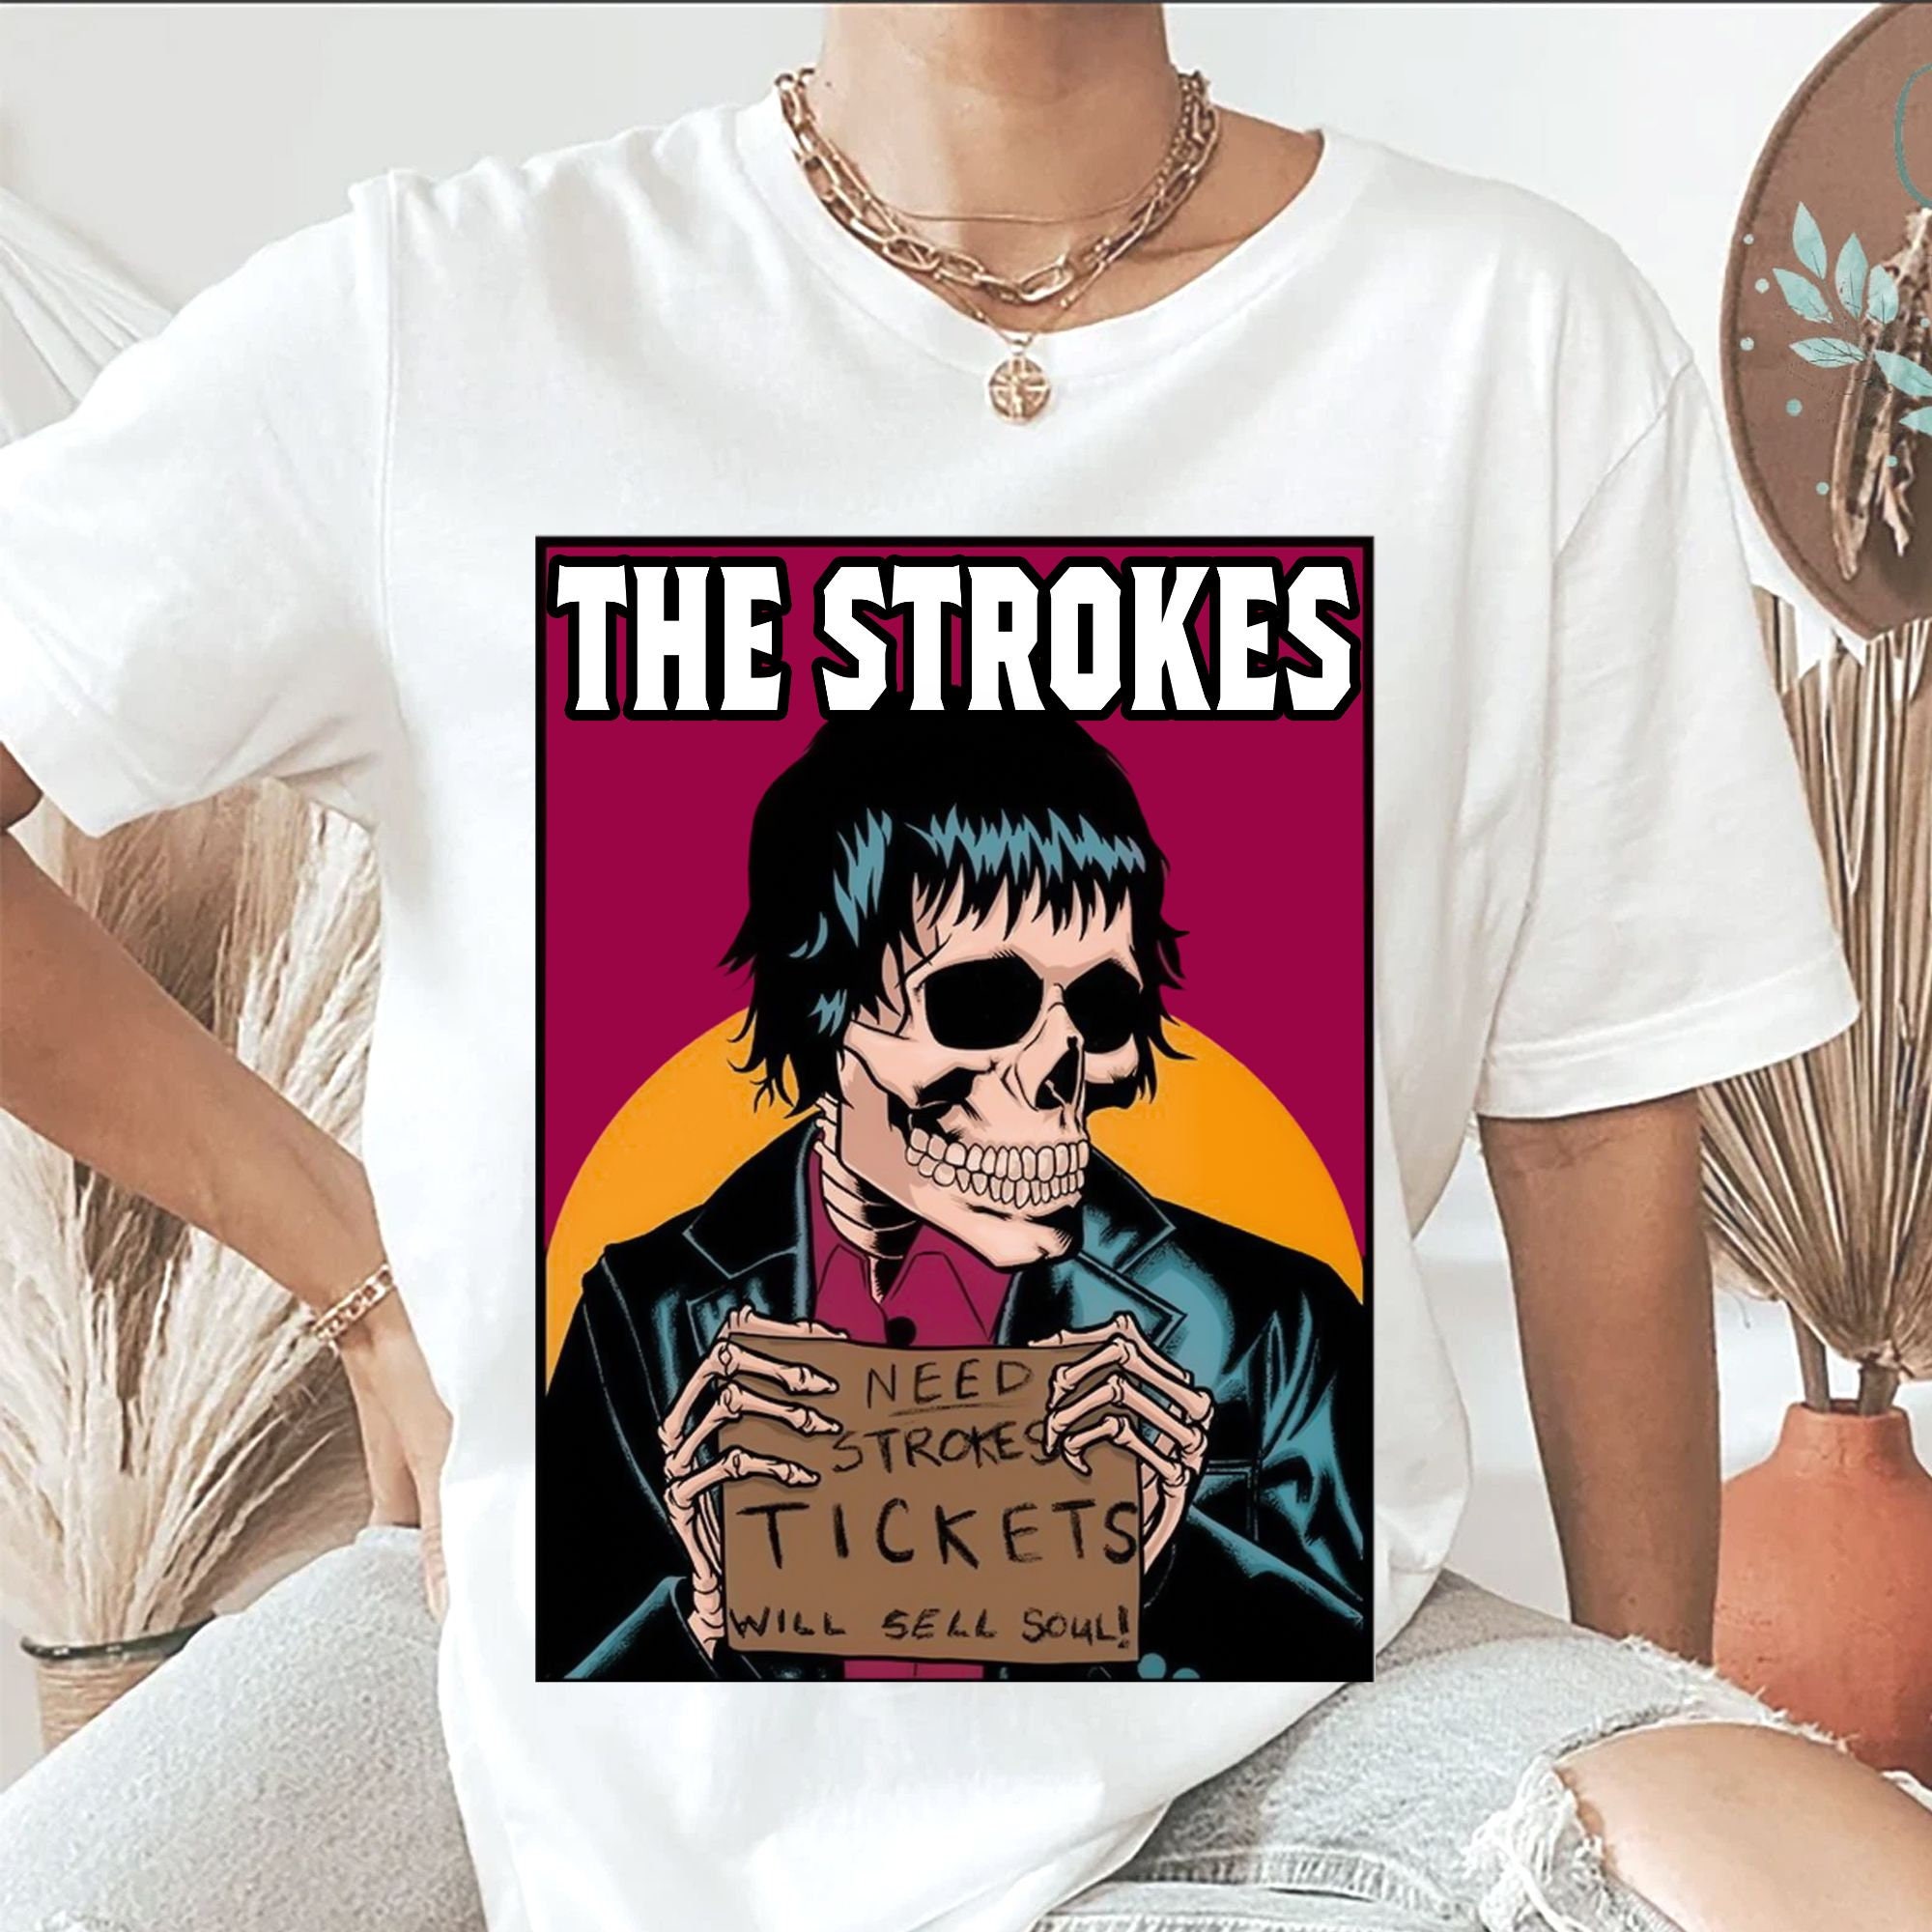 Discover Maglietta T-Shirt Rock Band The Strokes Uomo Donna Bambini Regalo Per Lei E Lui Regalo Di Compleanno